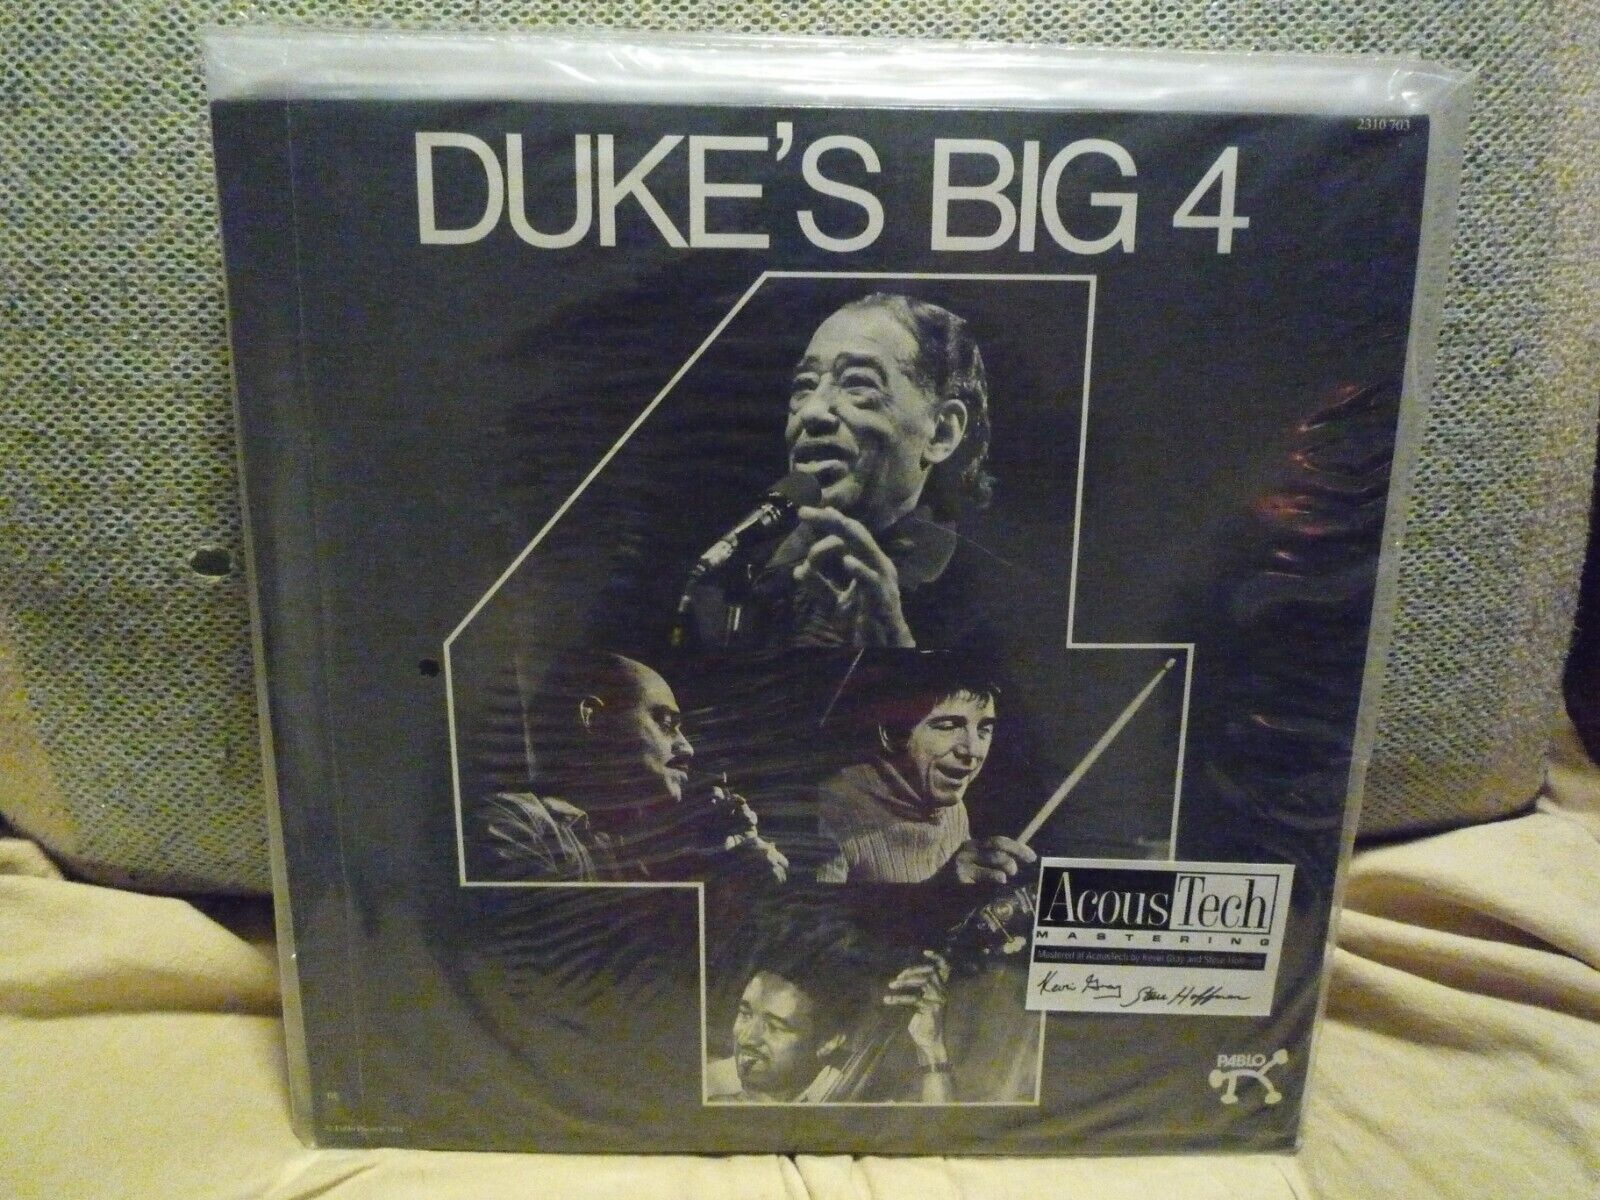 Duke Ellington ‎Duke's Big 4 AJAZ 2310 703 2LP Vinyl 45 RPM MINT SEALED NEW